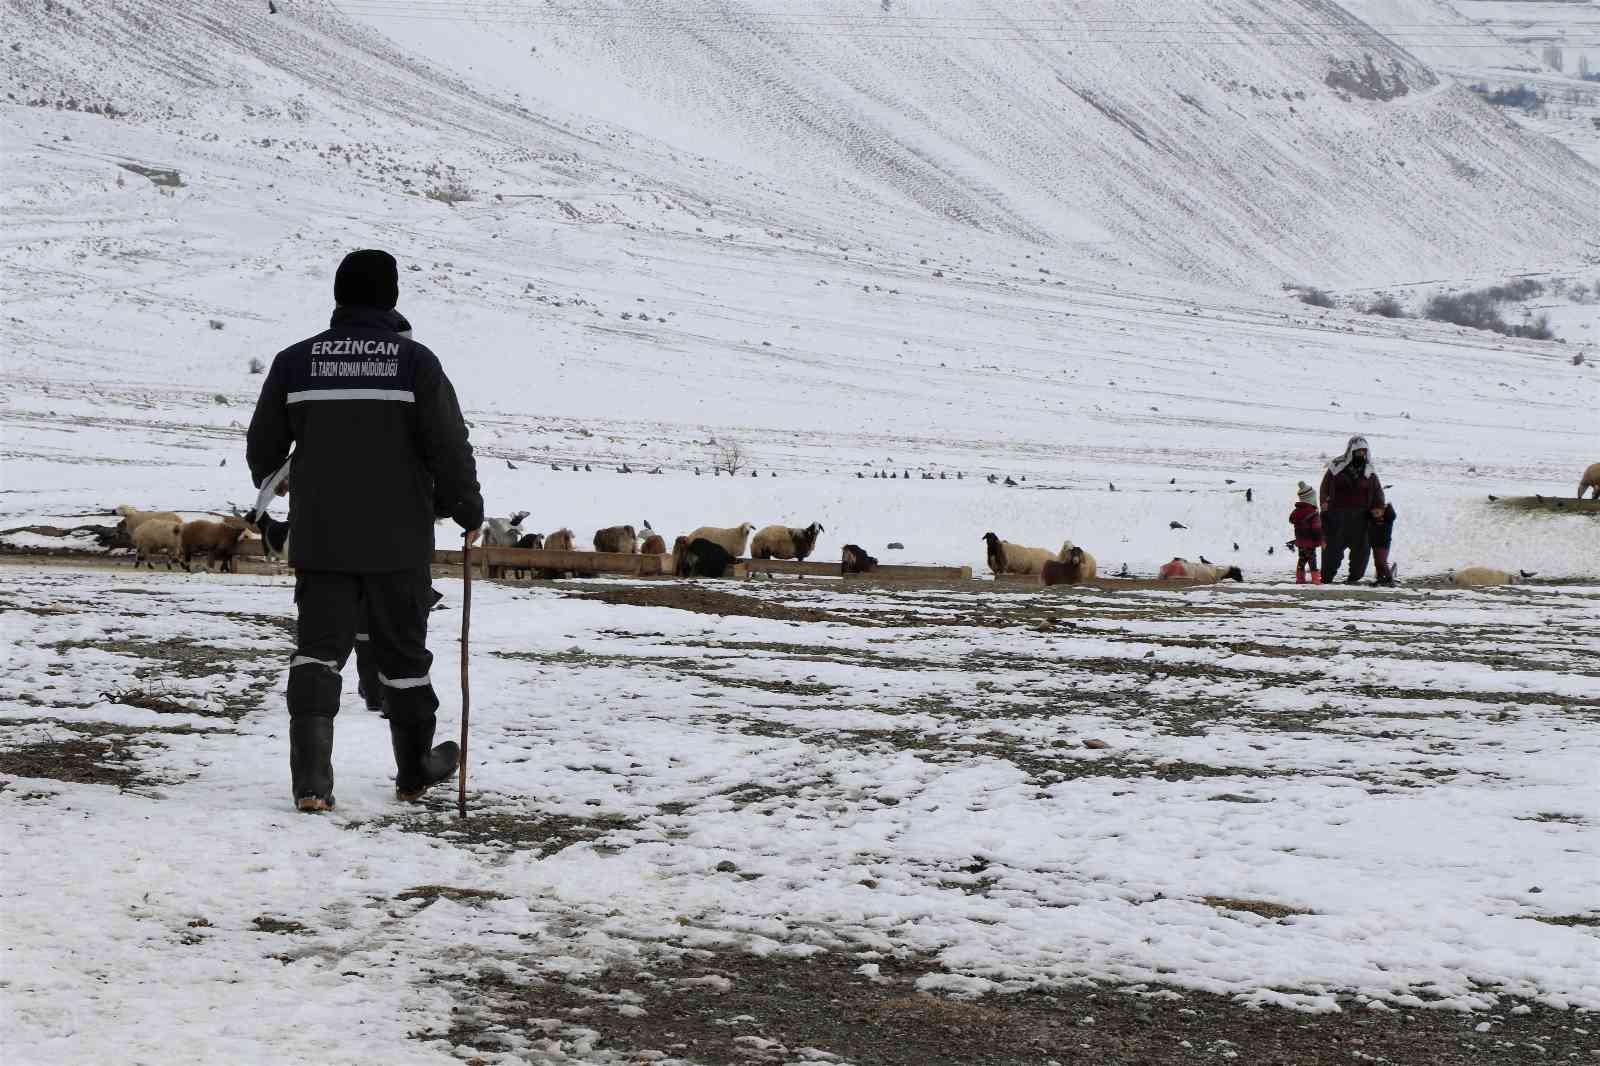 Karlı yolları aşıp besicilere ulaşıyorlar #erzincan